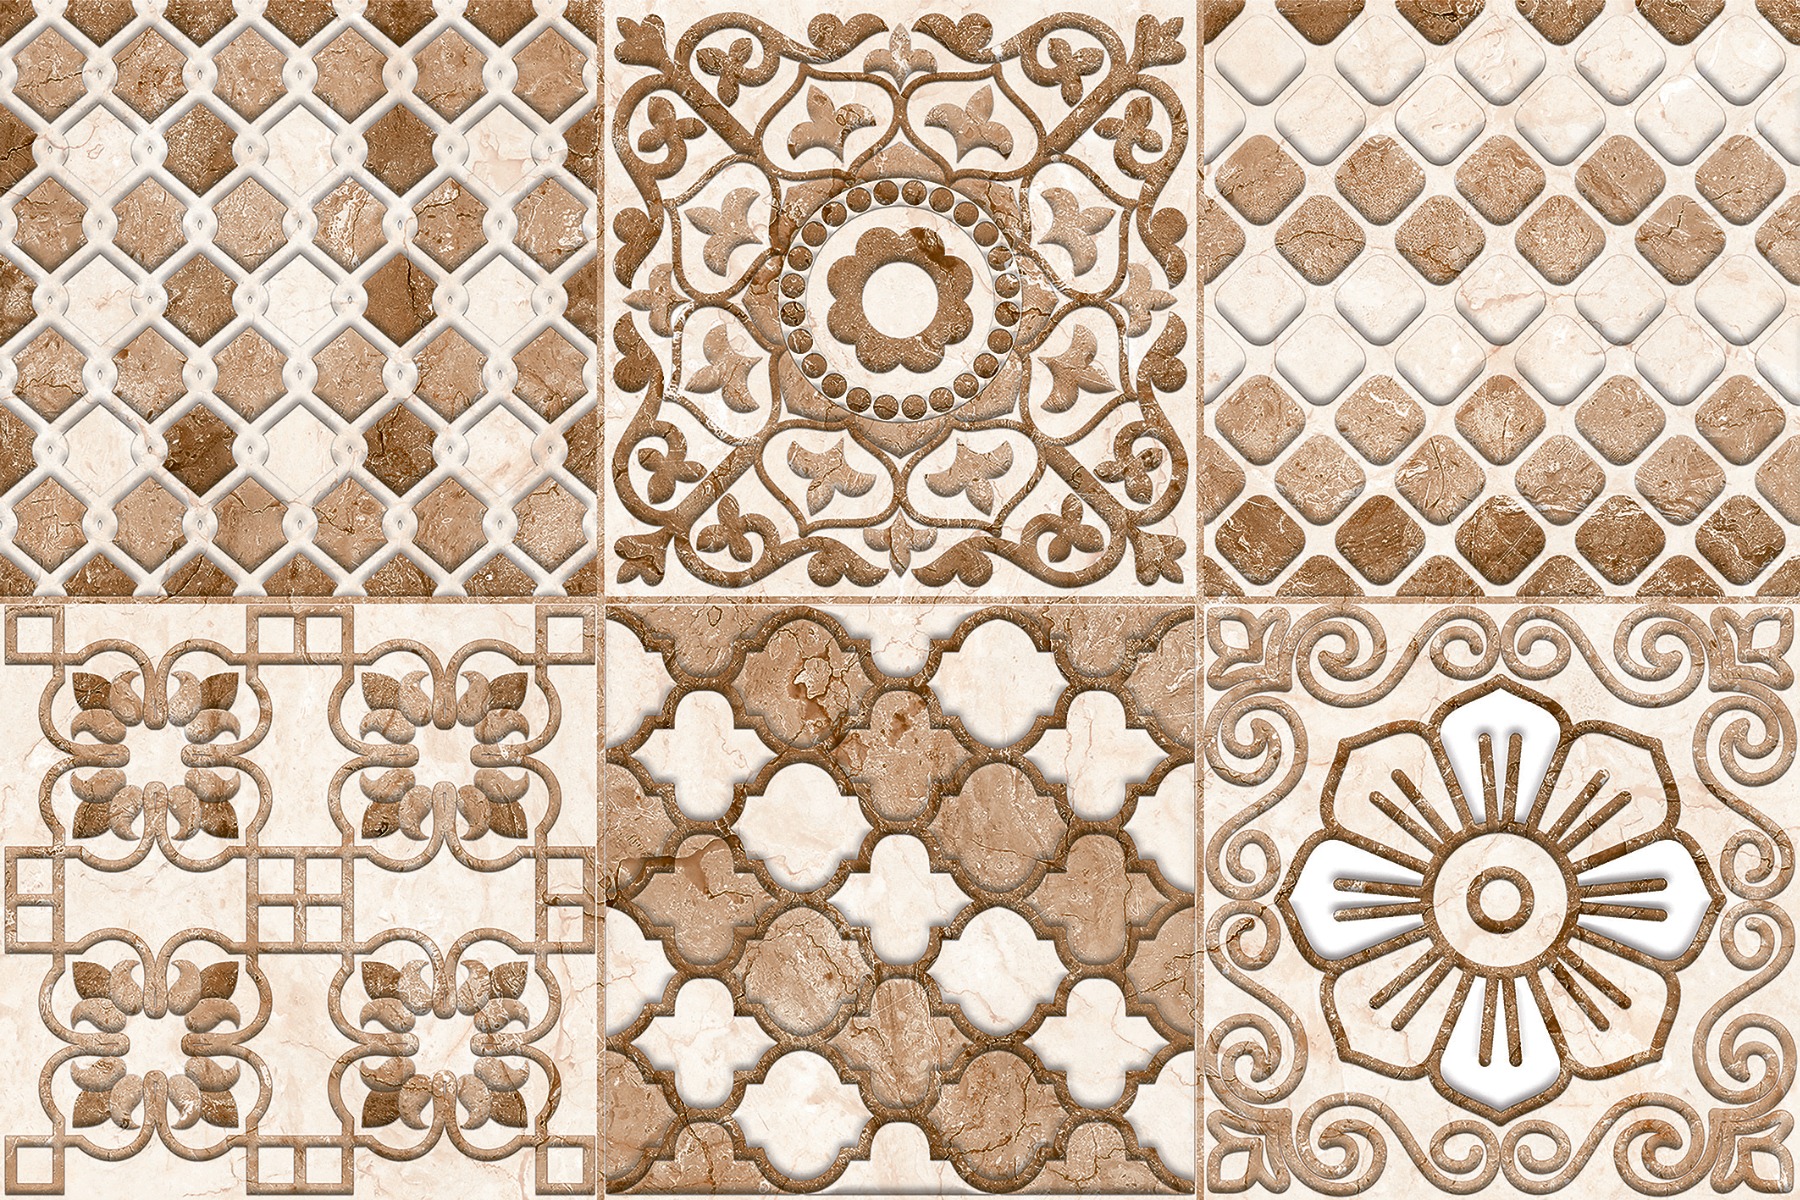 White Marble Tiles for Bathroom Tiles, Living Room Tiles, Kitchen Tiles, Bedroom Tiles, Balcony Tiles